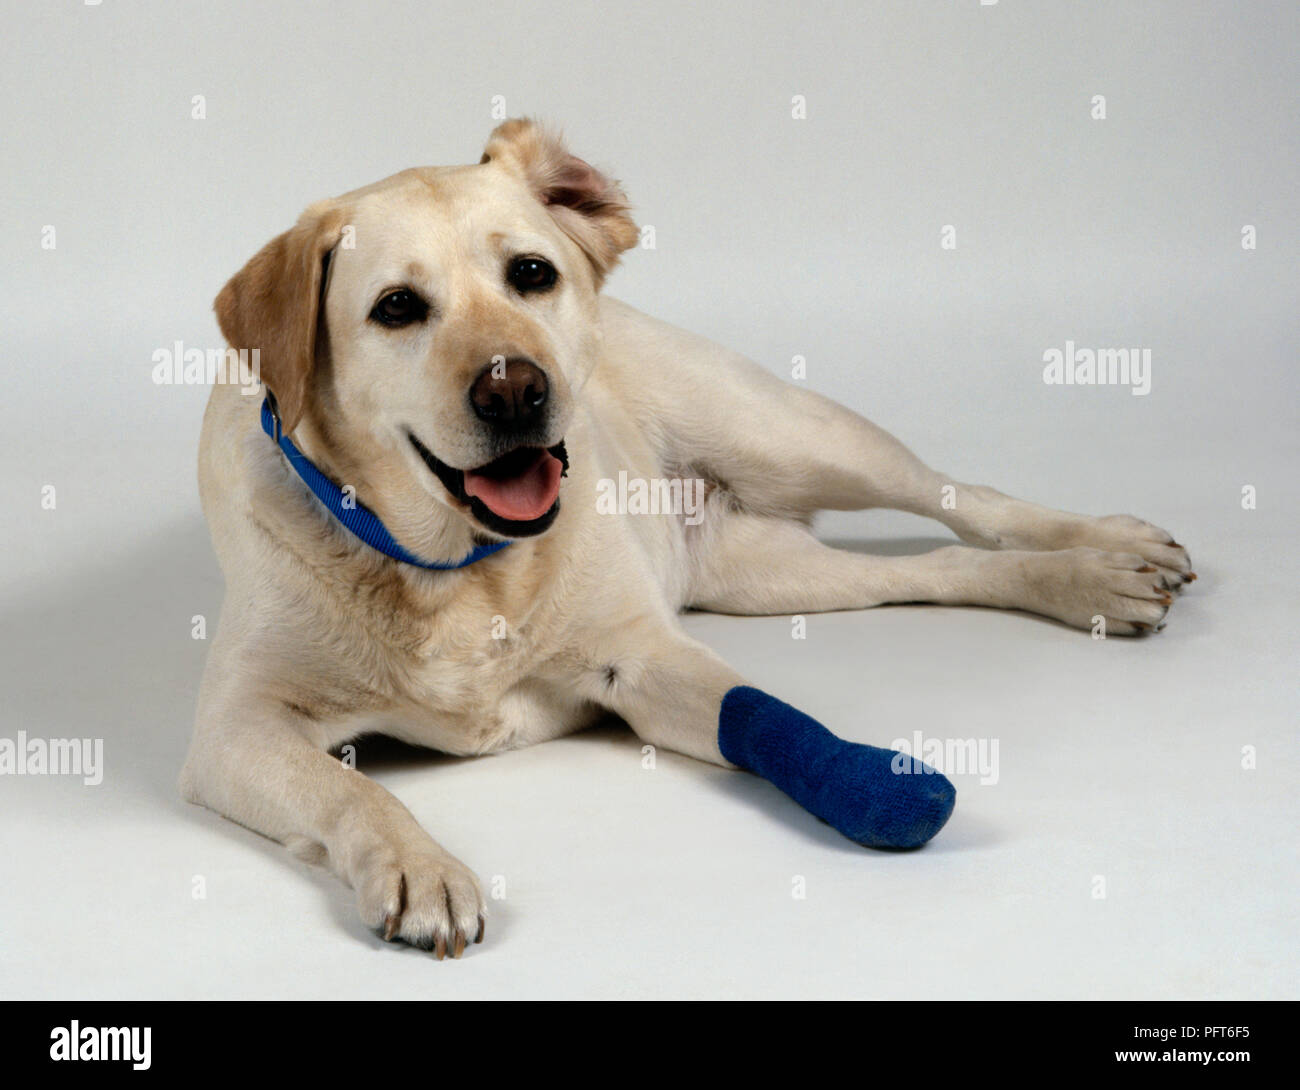 Labrador Retriever jaune avec bandage bleu sur patte avant gauche Banque D'Images